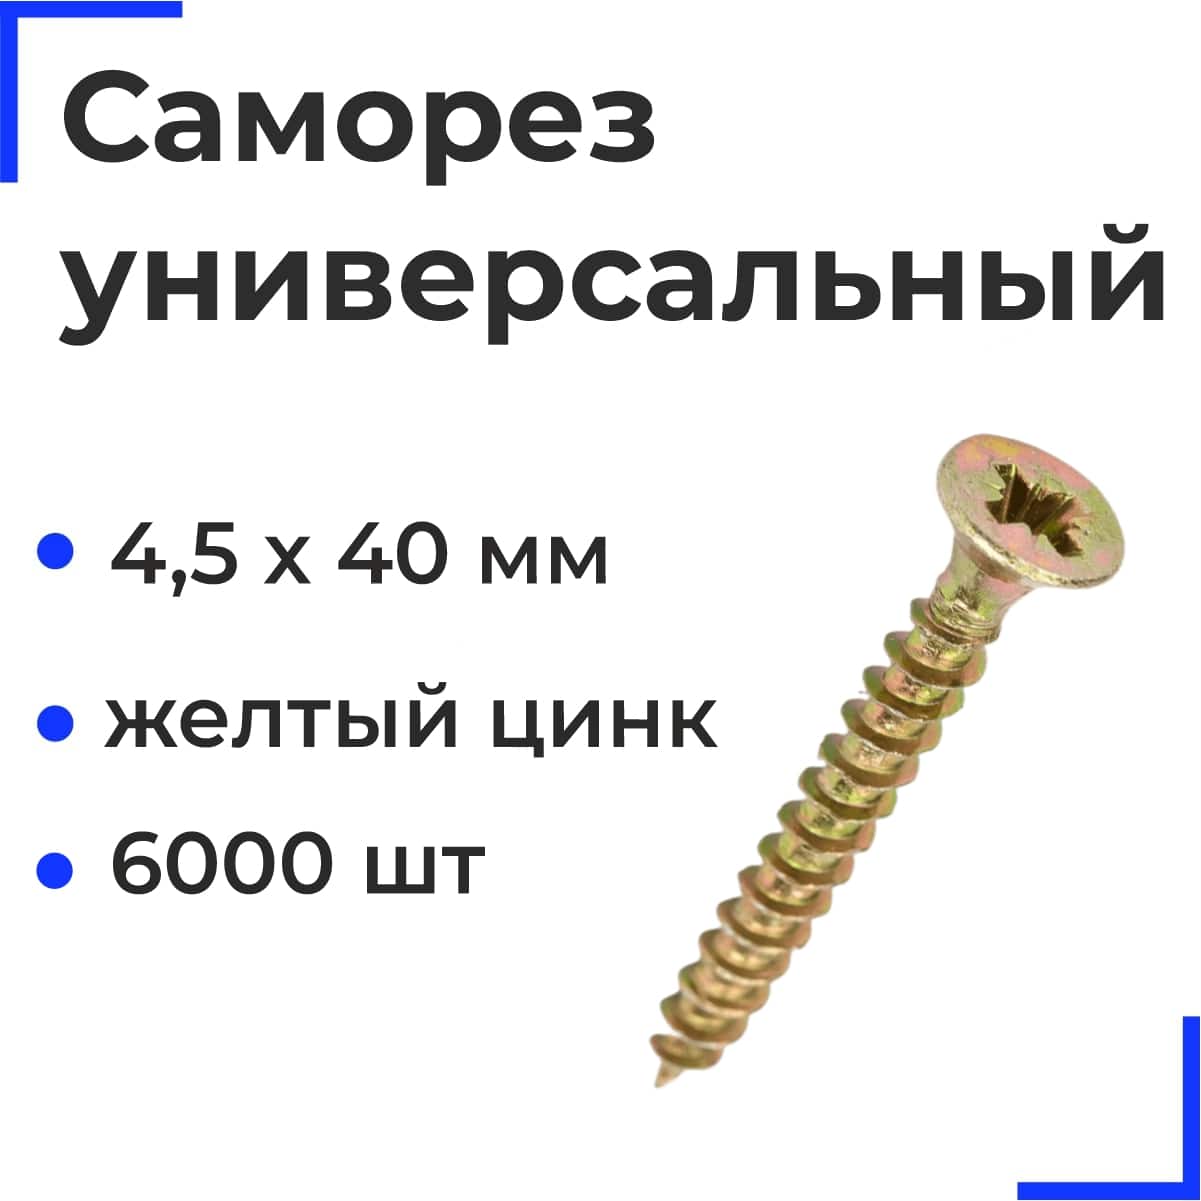 Саморез универсальный 4,5х40 желтый цинк (6000шт/17кг) РФ